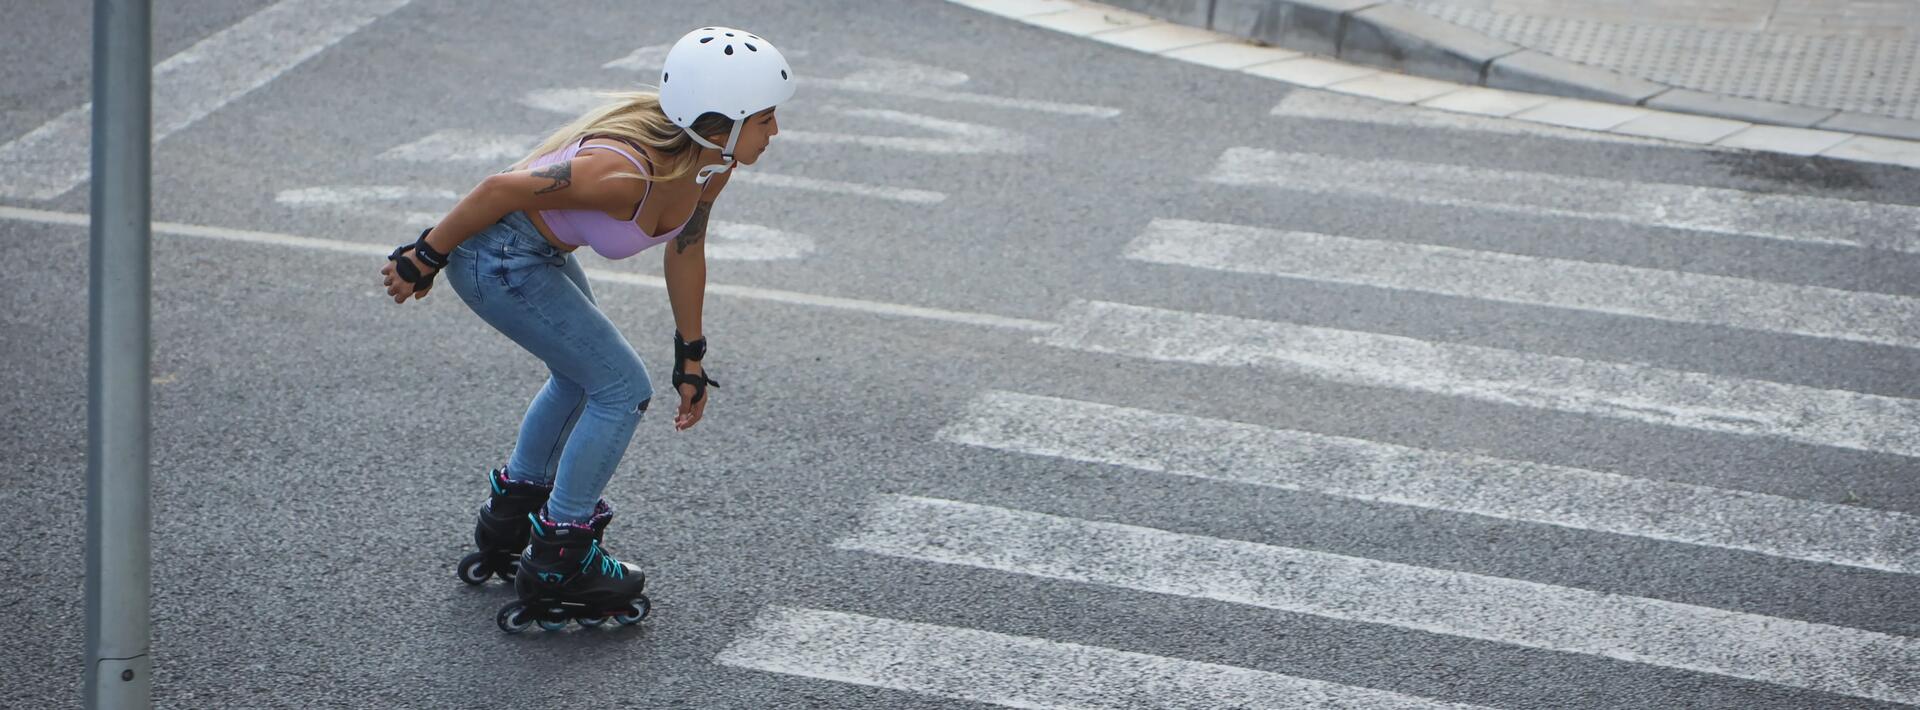 mujer practicando patinaje sobre ruedas